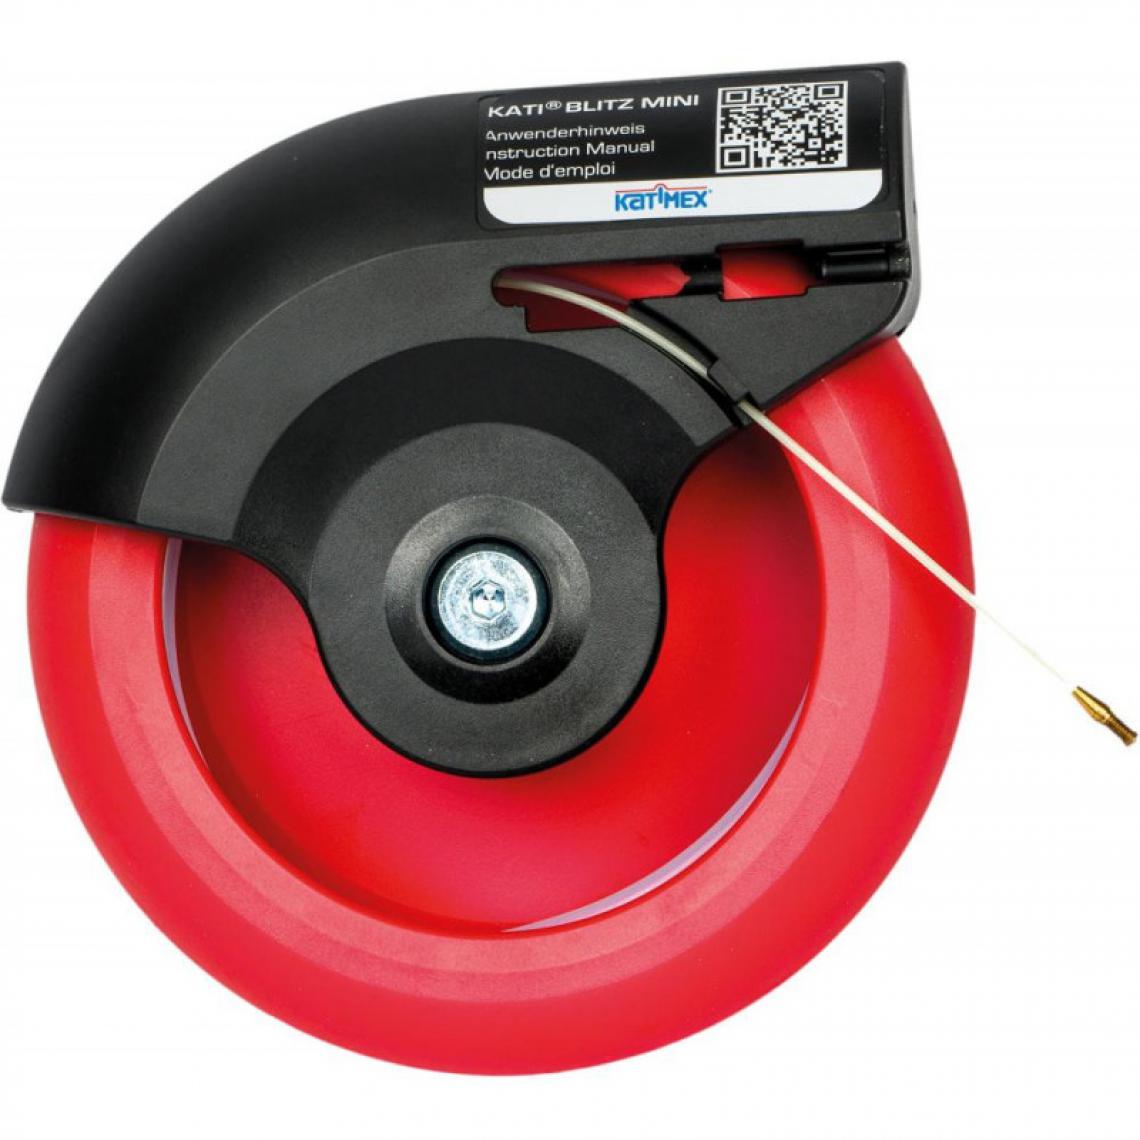 marque generique - Tire cable 25m Katimex - Fils et câbles électriques